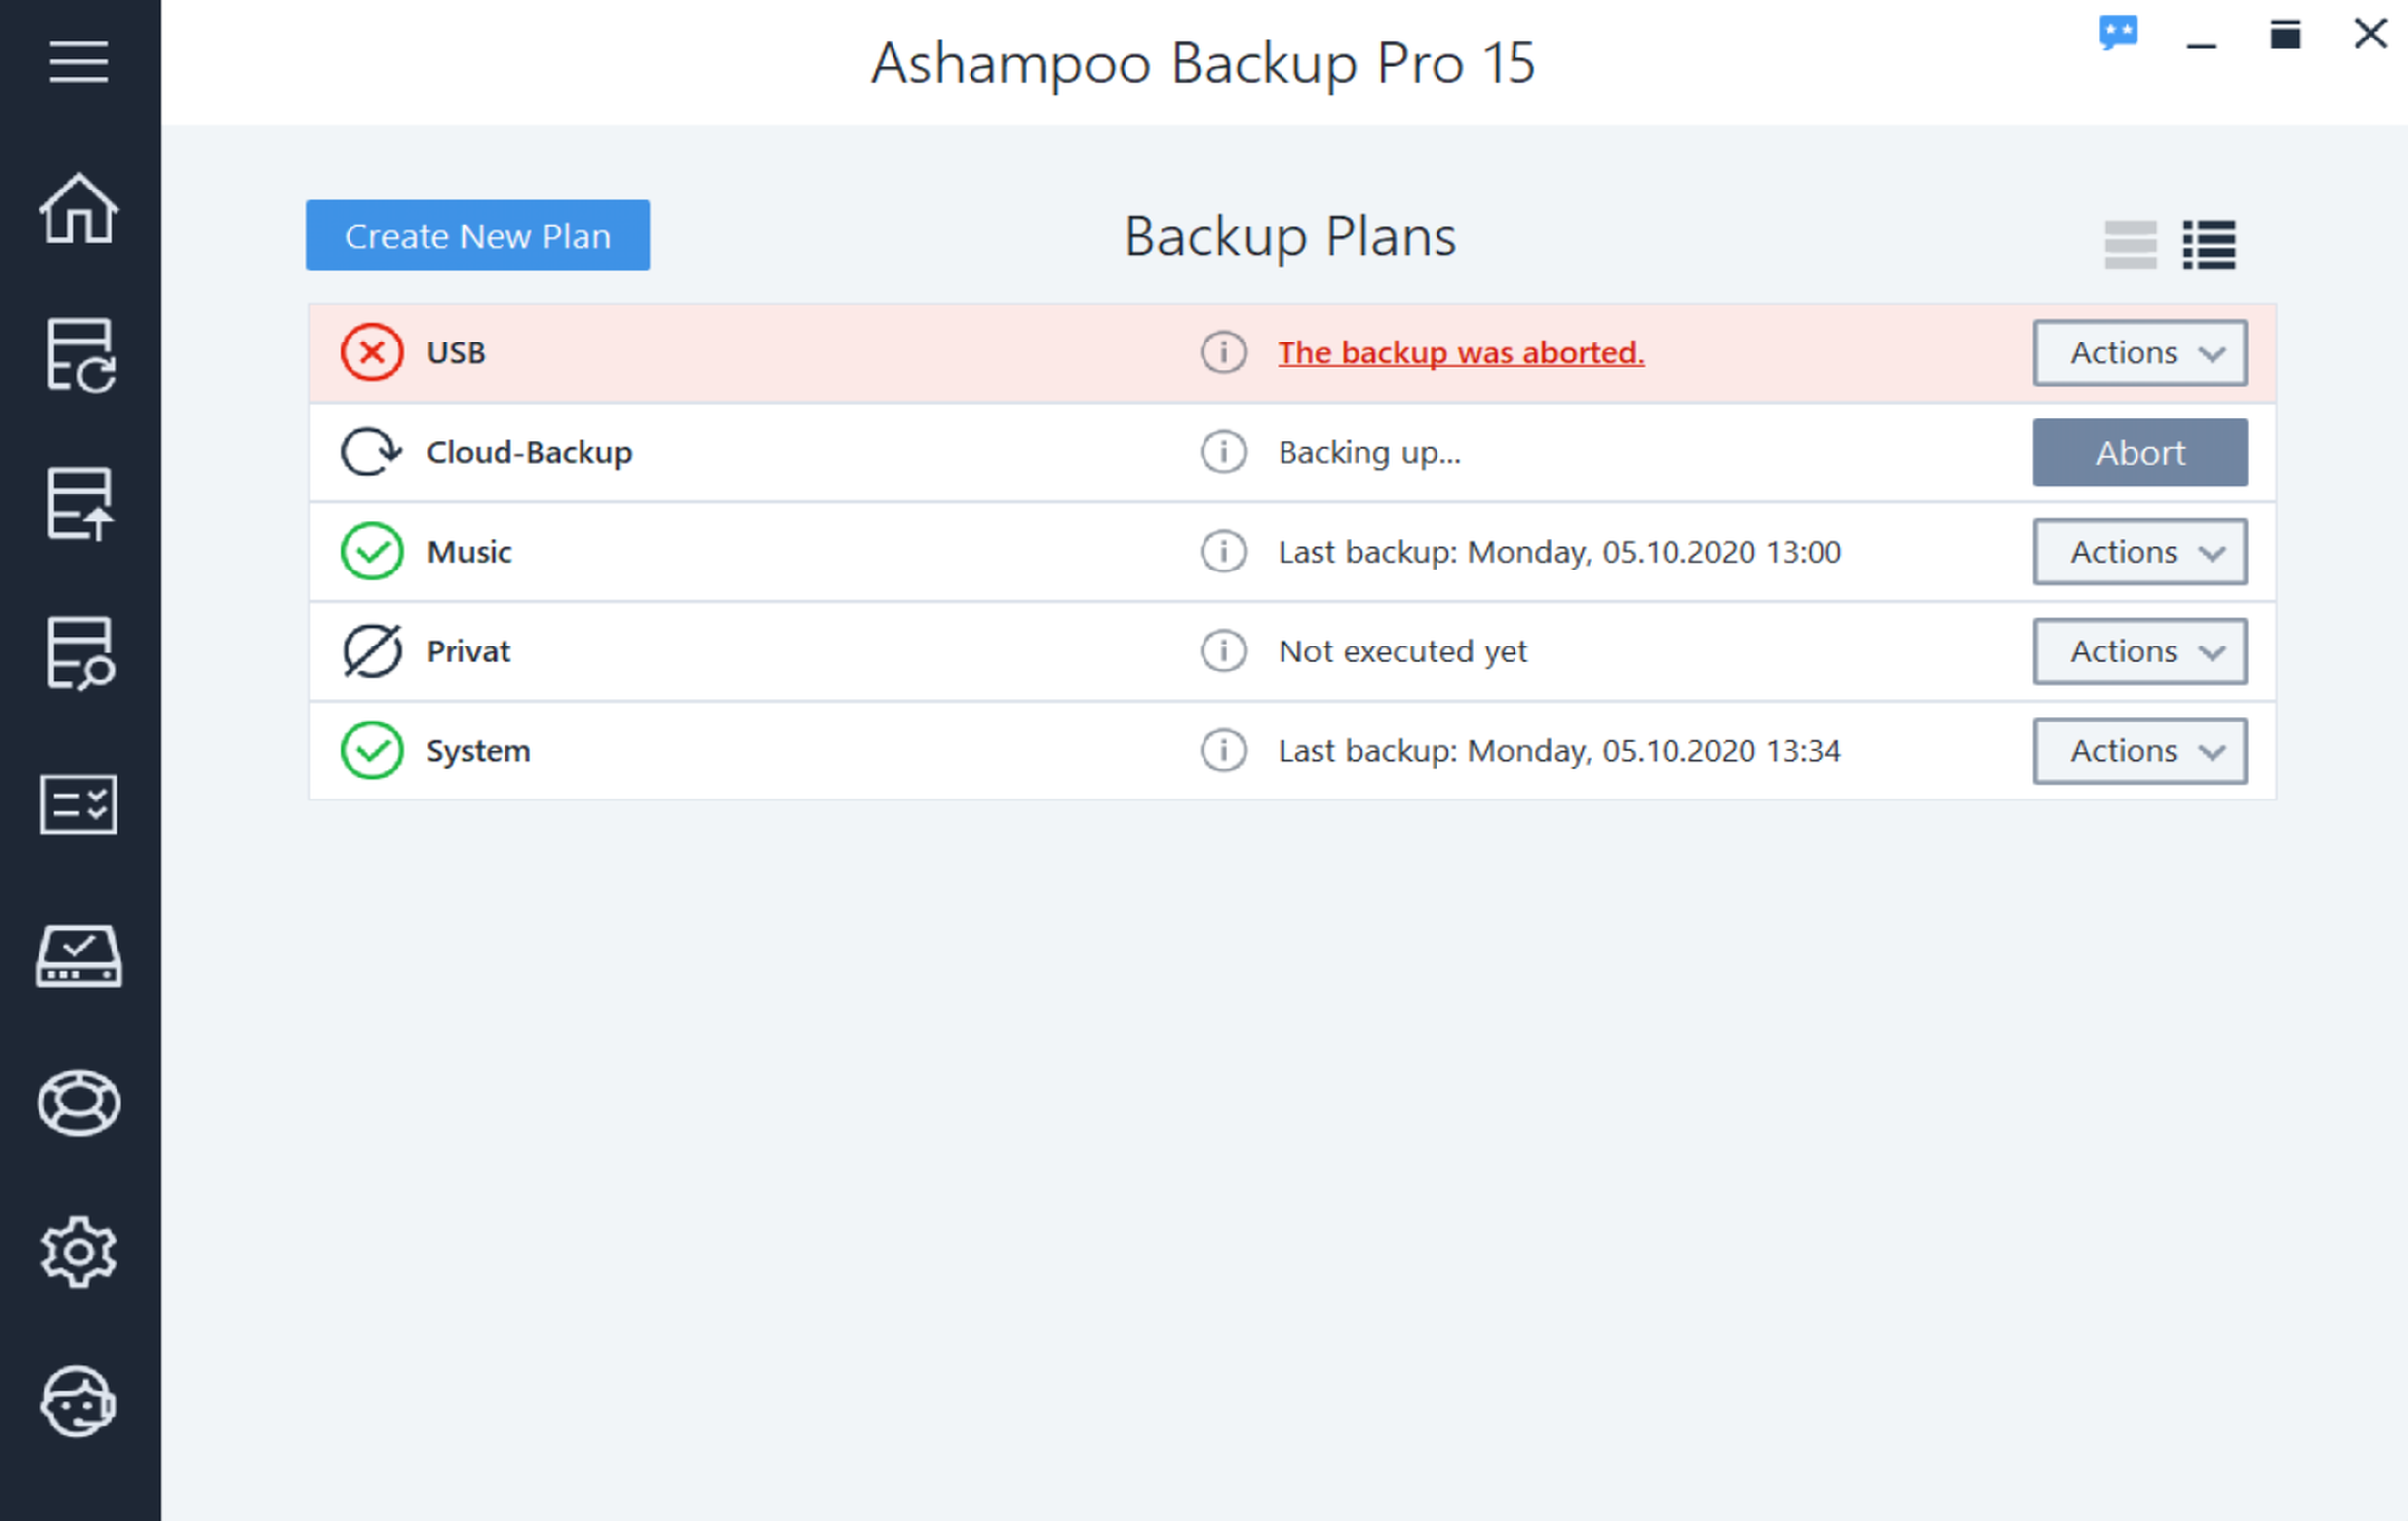 [$ 4.51] Ashampoo Backup Pro 15 Activation Key